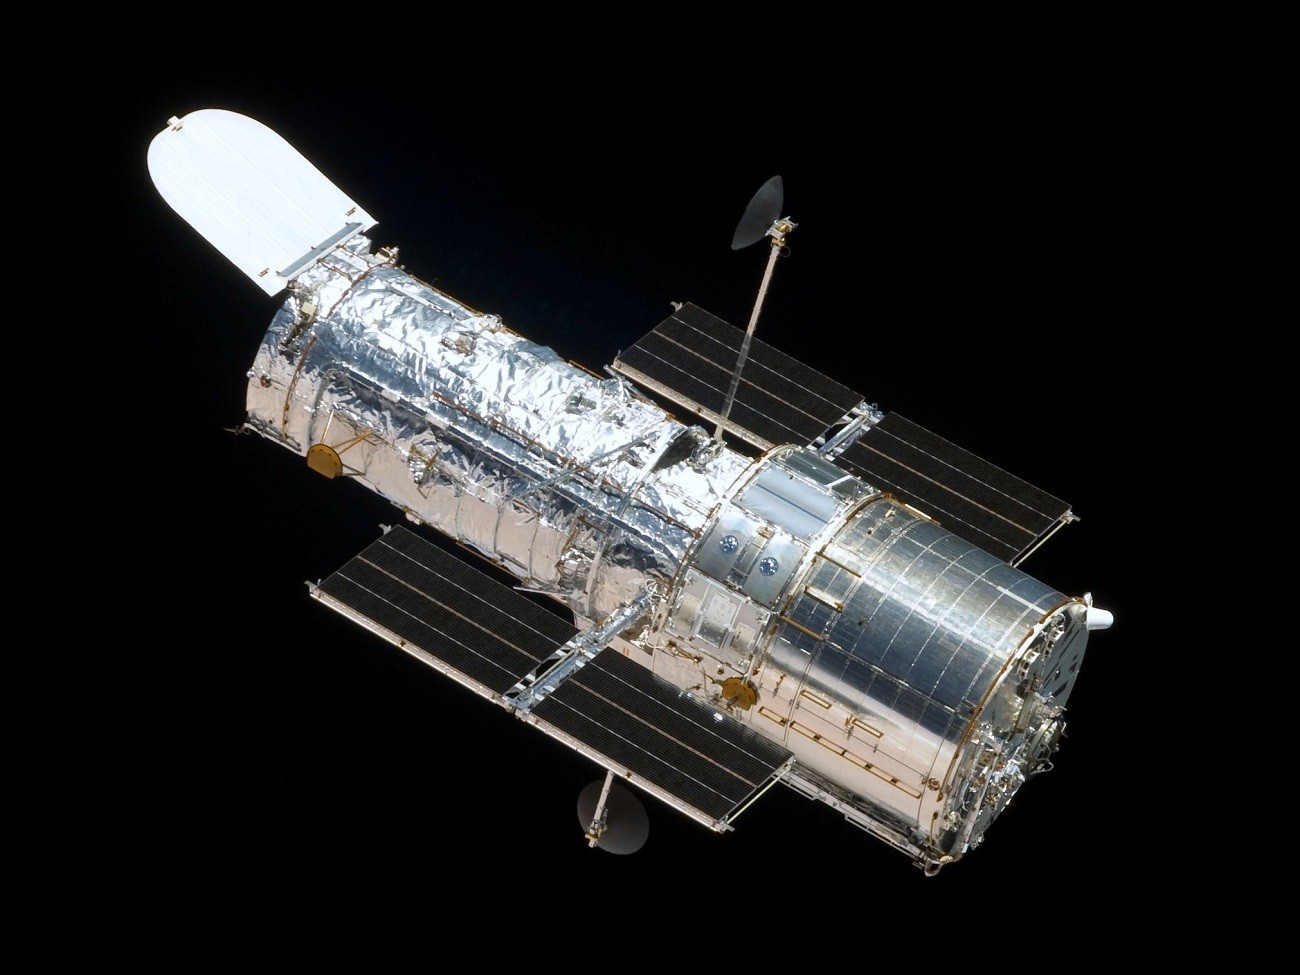 Kosmiczny Teleskop Hubble’a powrócił i zdążył już wykonać pierwsze zdjęcia